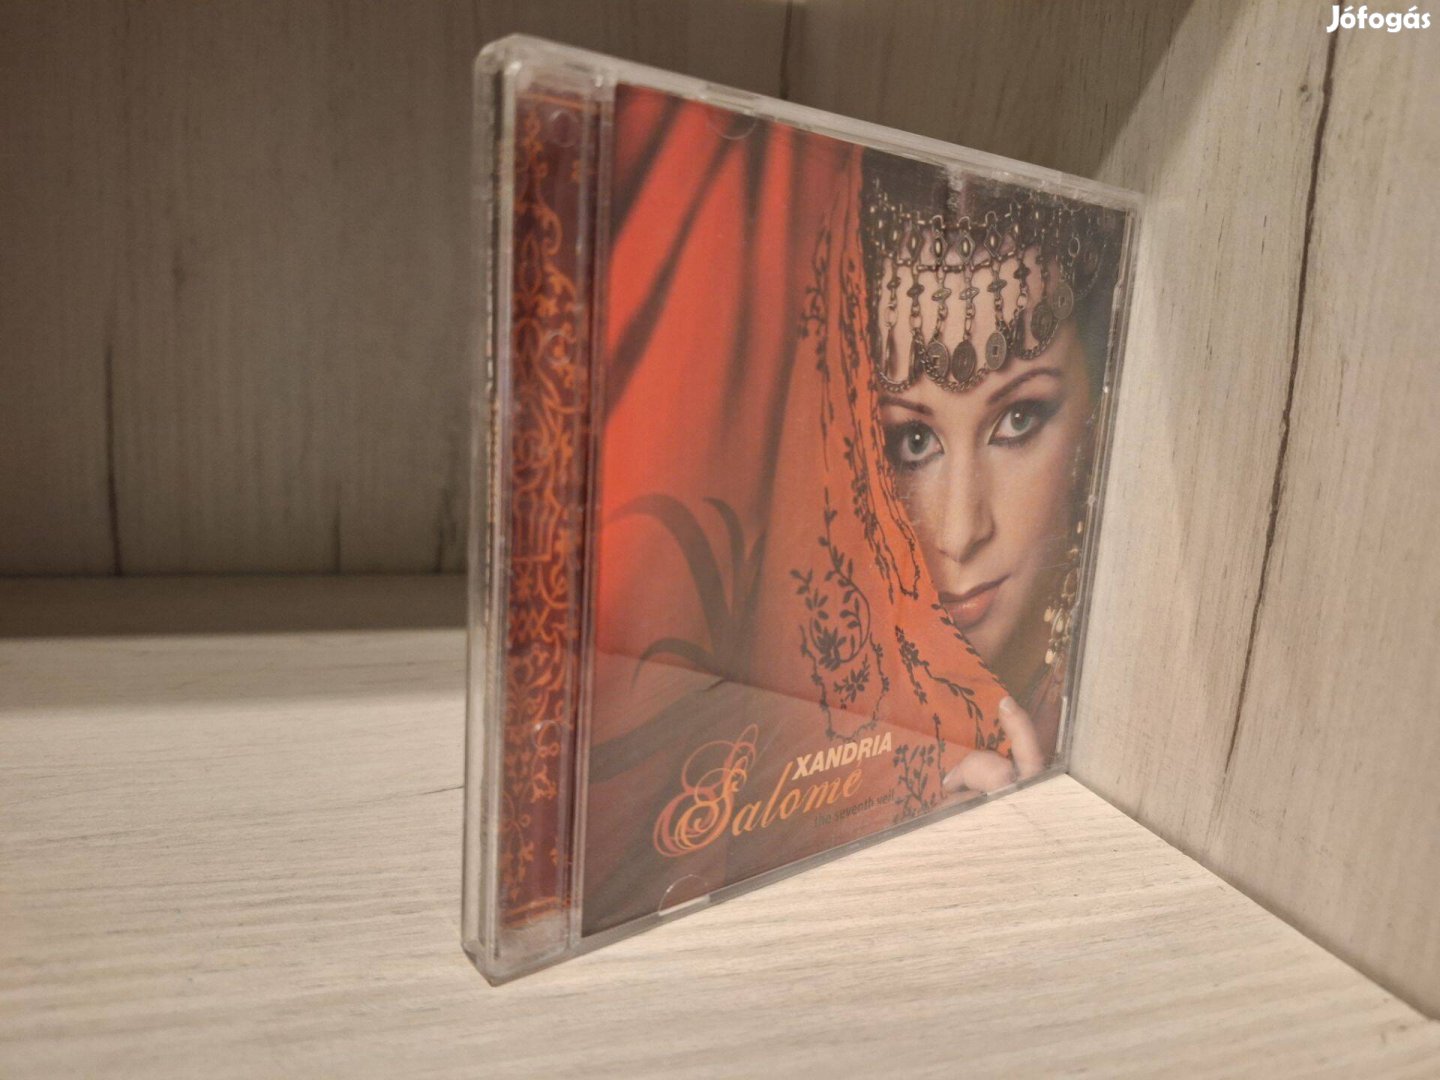 Xandria - Salomé - The Seventh Veil CD